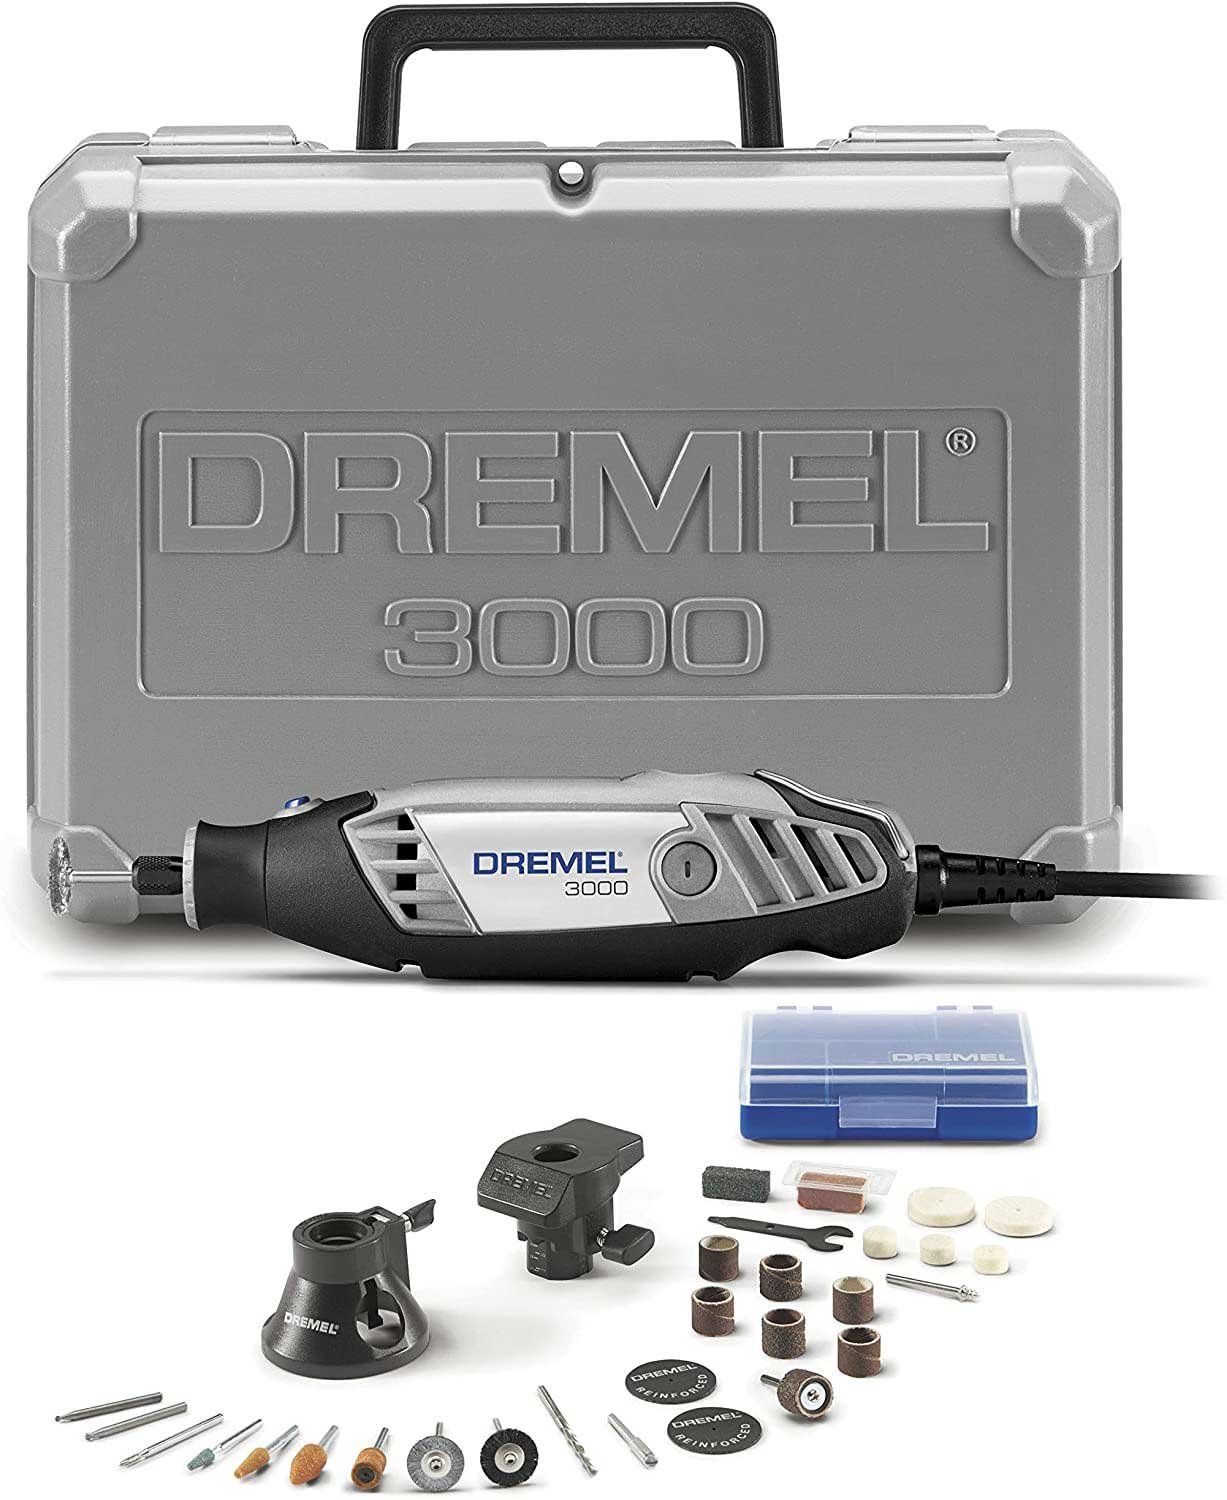 Dremel 3000-2/28 Variable Speed Rotary Tool Kit